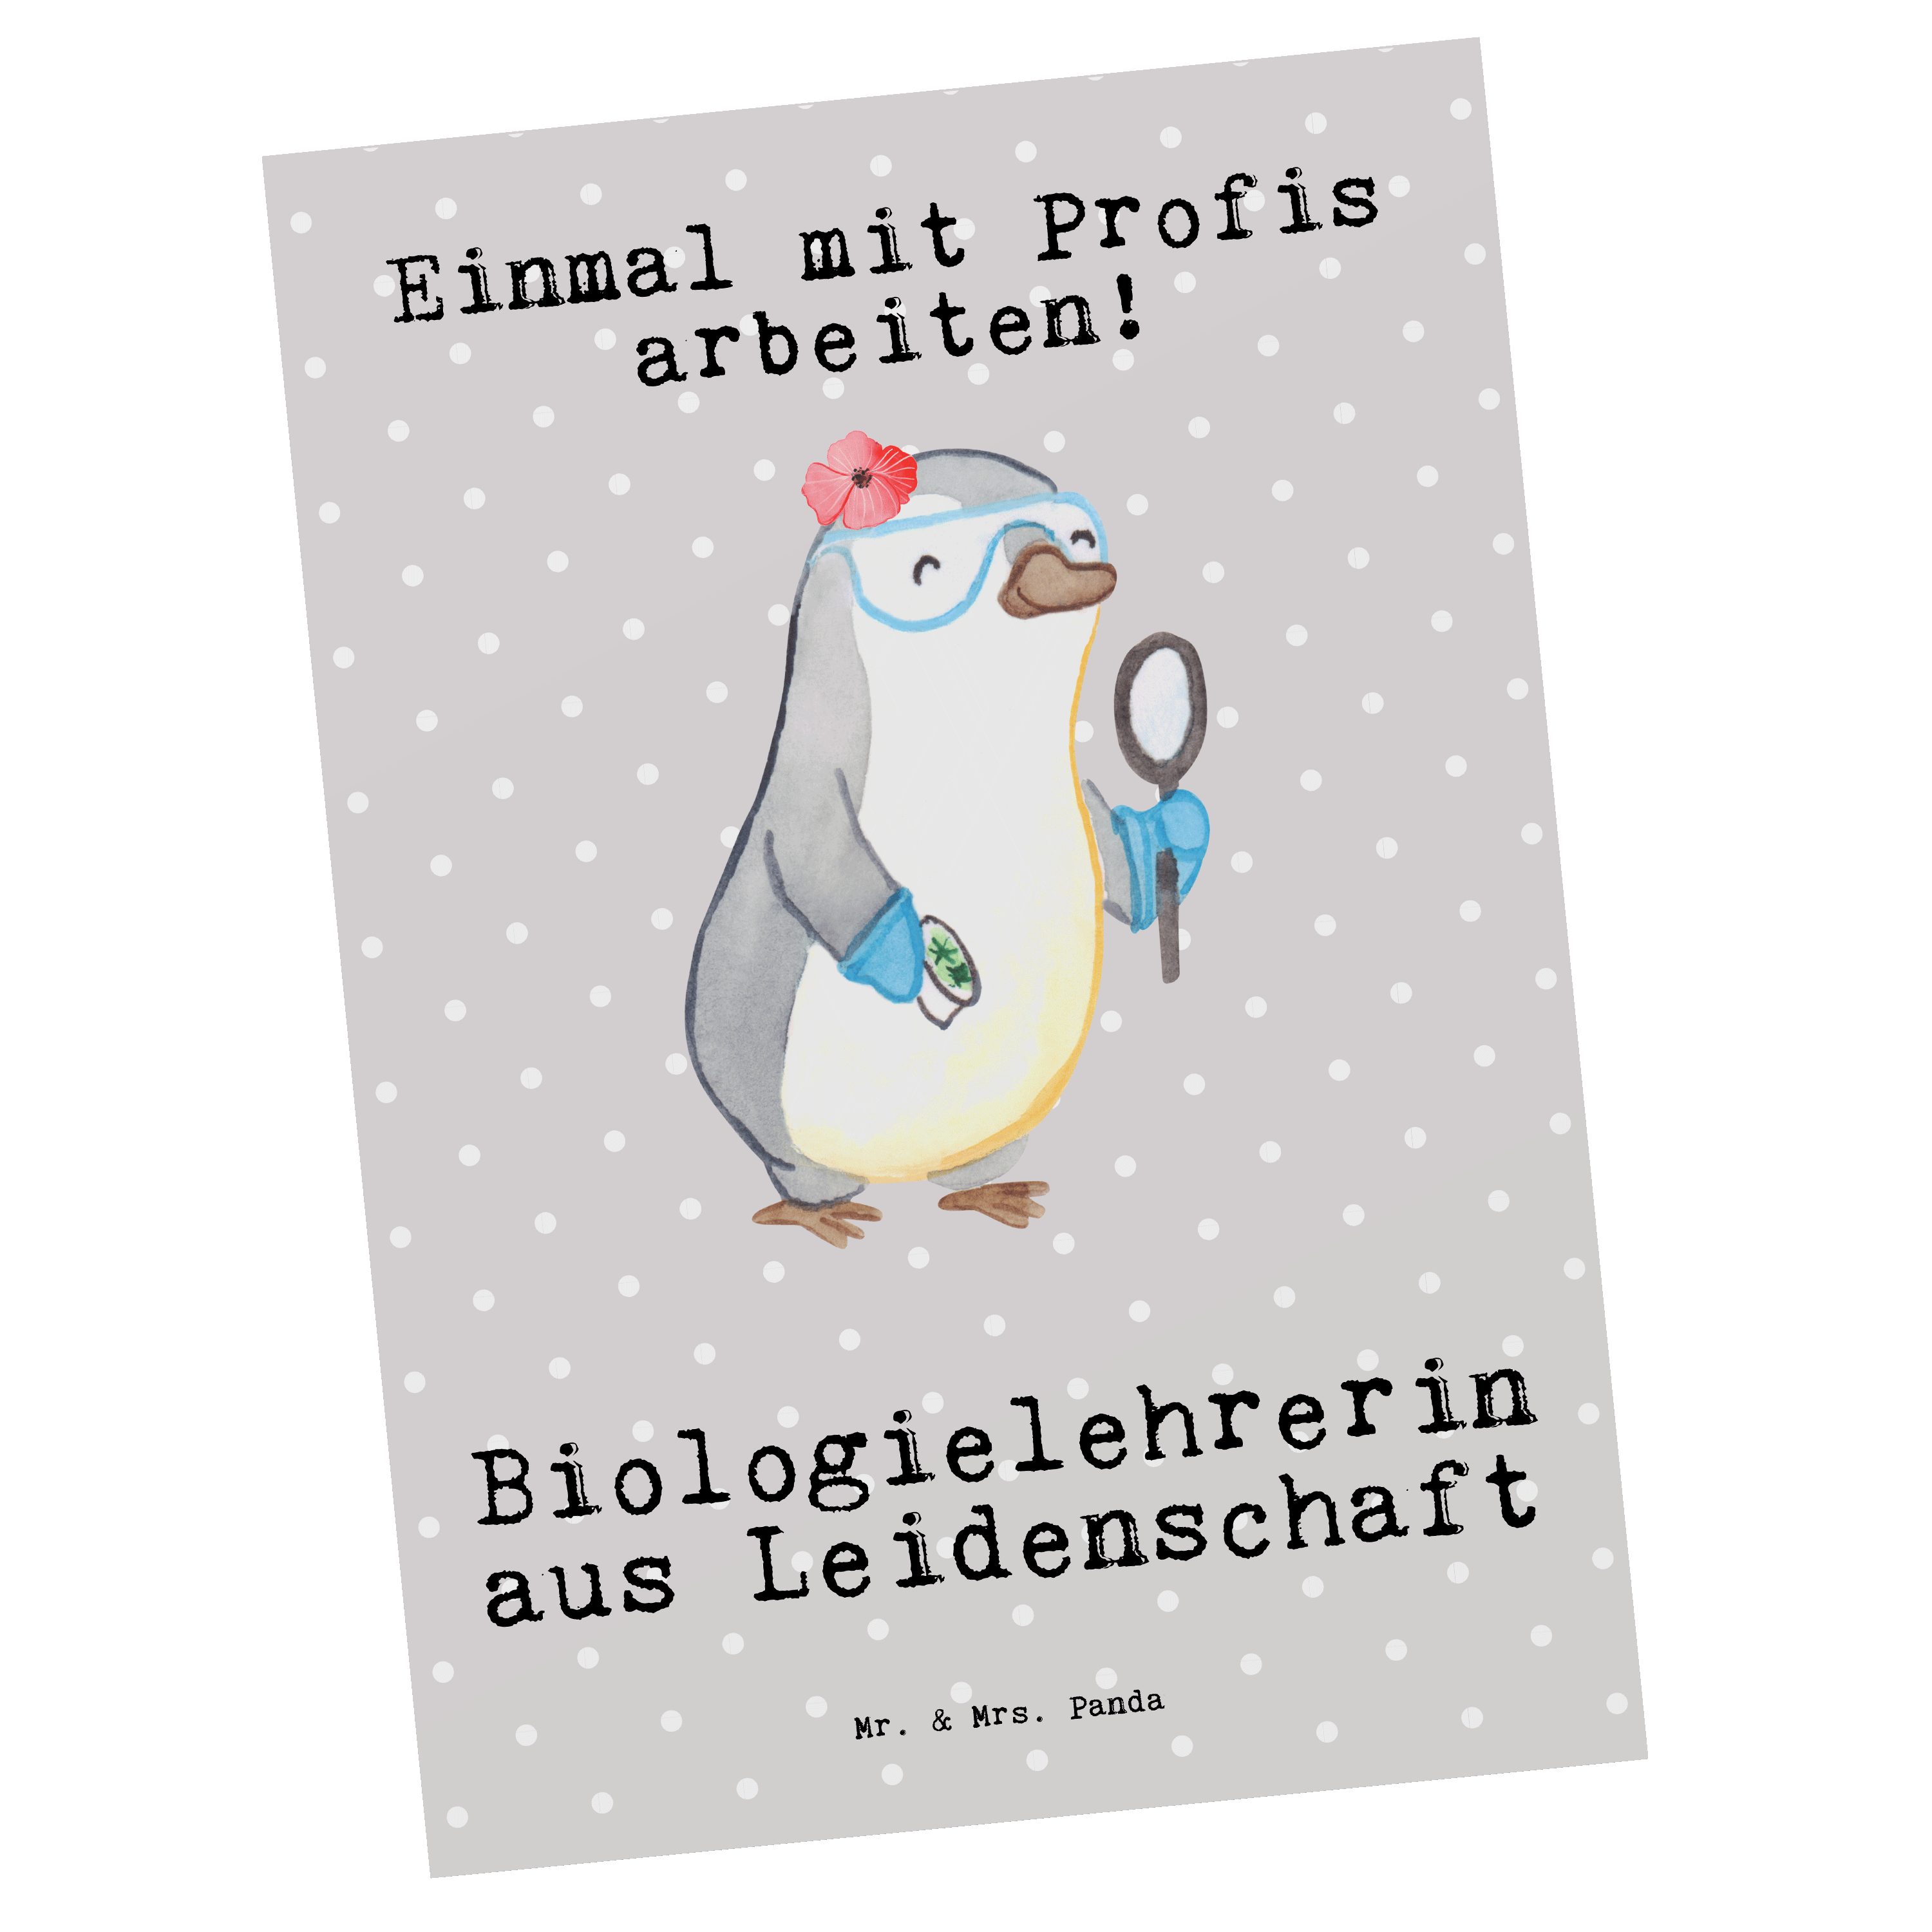 Mr. & Biologielehrerin Pastell Panda - Mrs. aus Arbeitsk Postkarte - Leidenschaft Geschenk, Grau